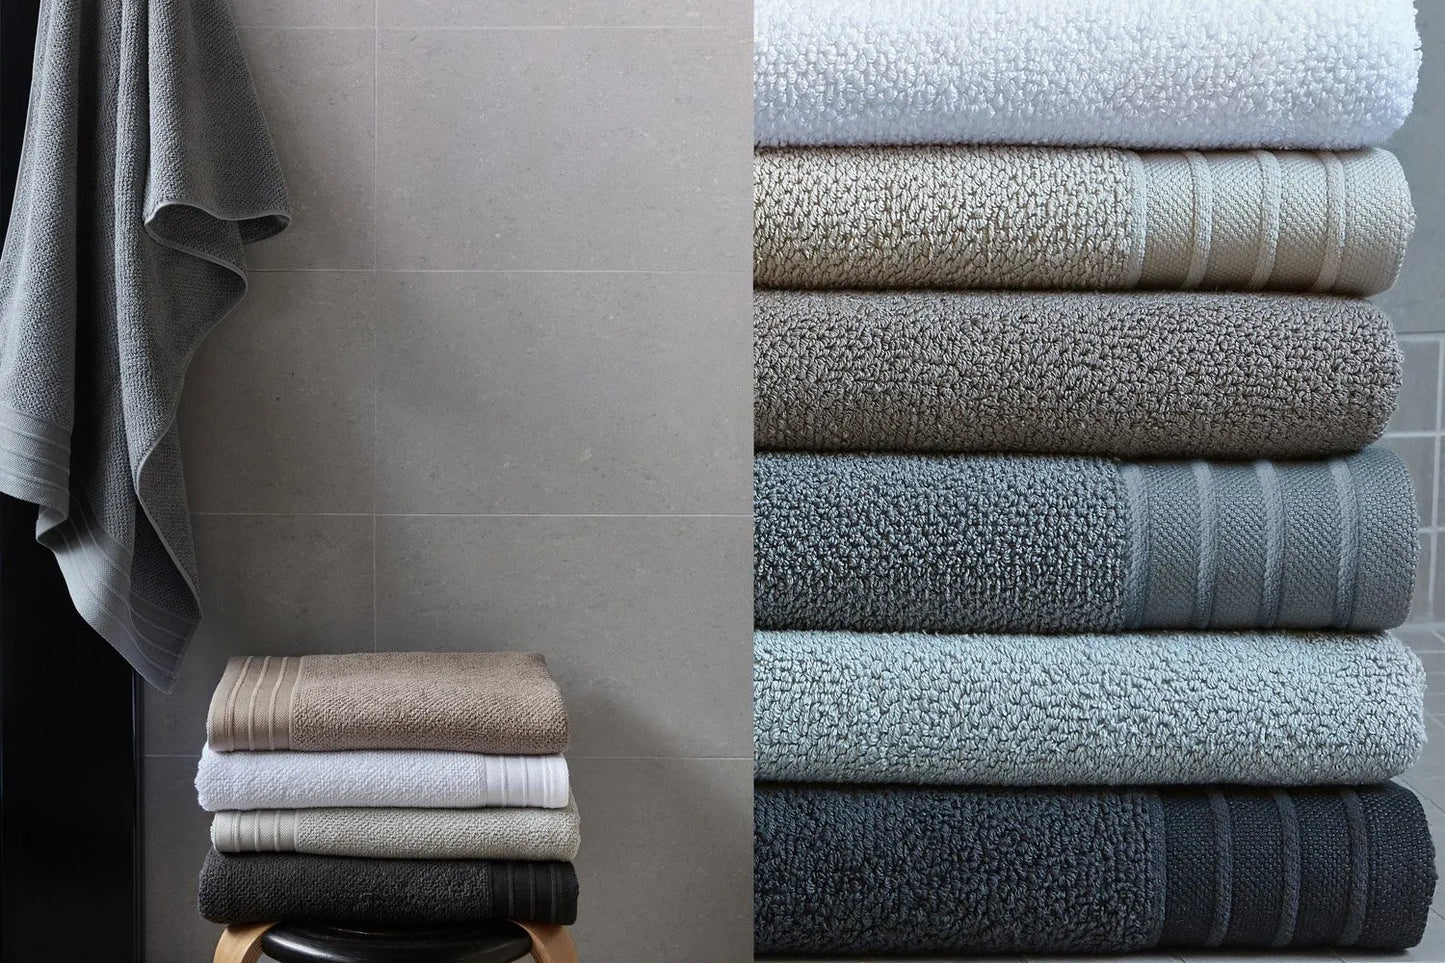 Bemboka Jacquard Towel Collection